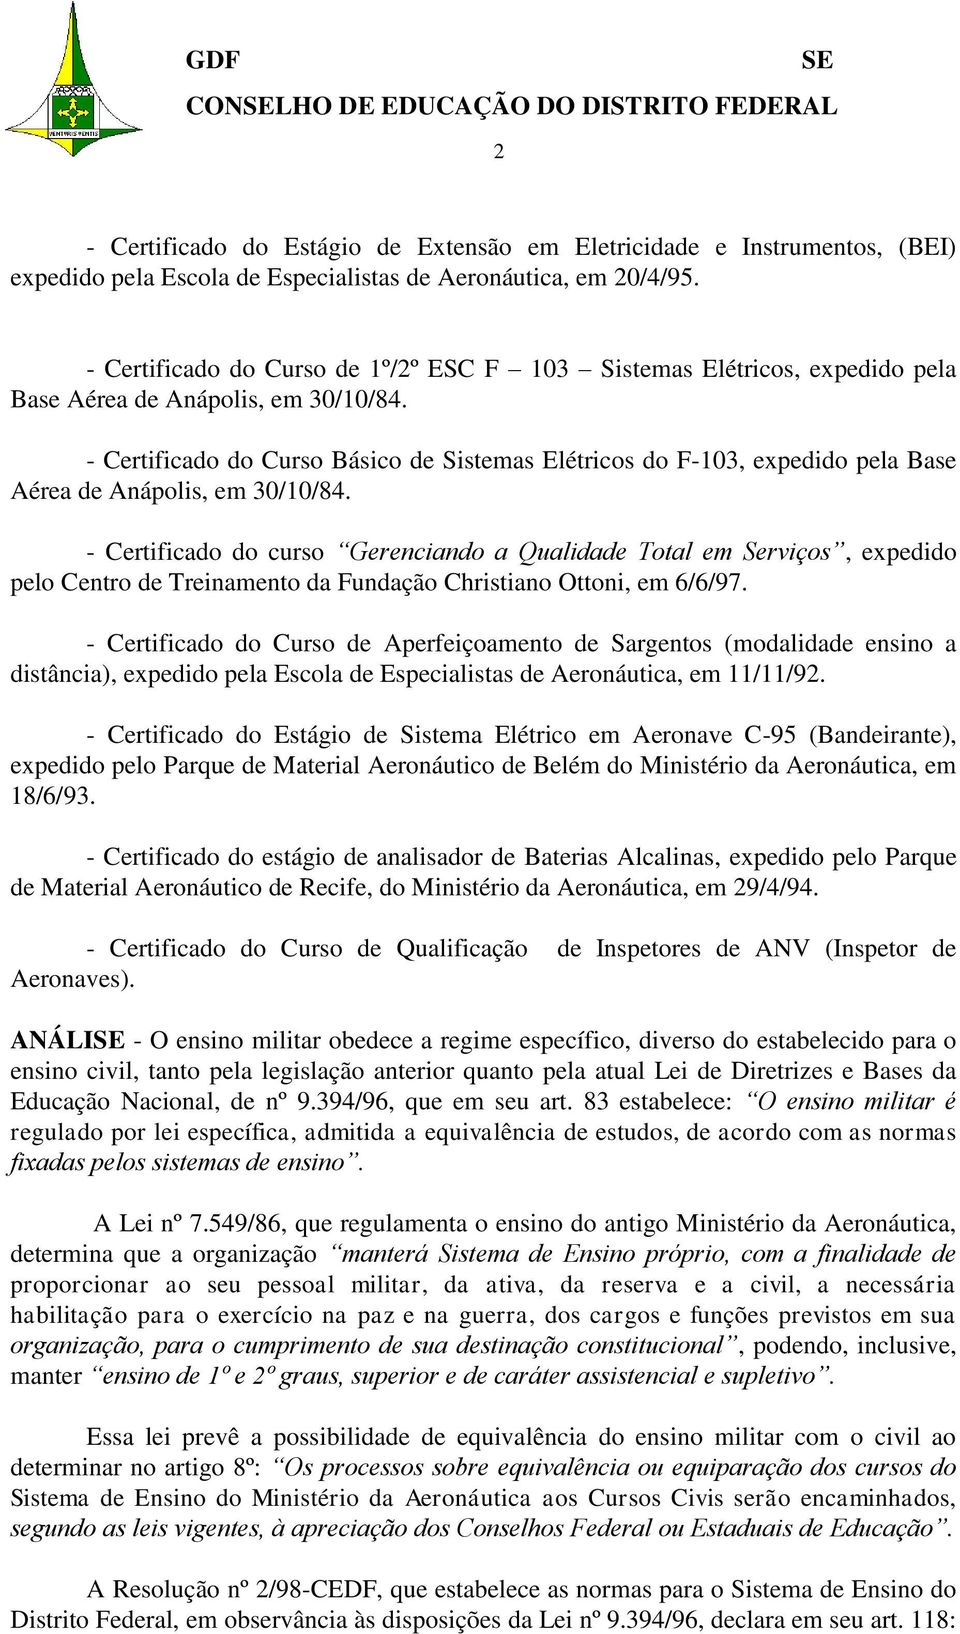 - Certificado do Curso Básico de Sistemas Elétricos do F-103, expedido pela Base Aérea de Anápolis, em 30/10/84.